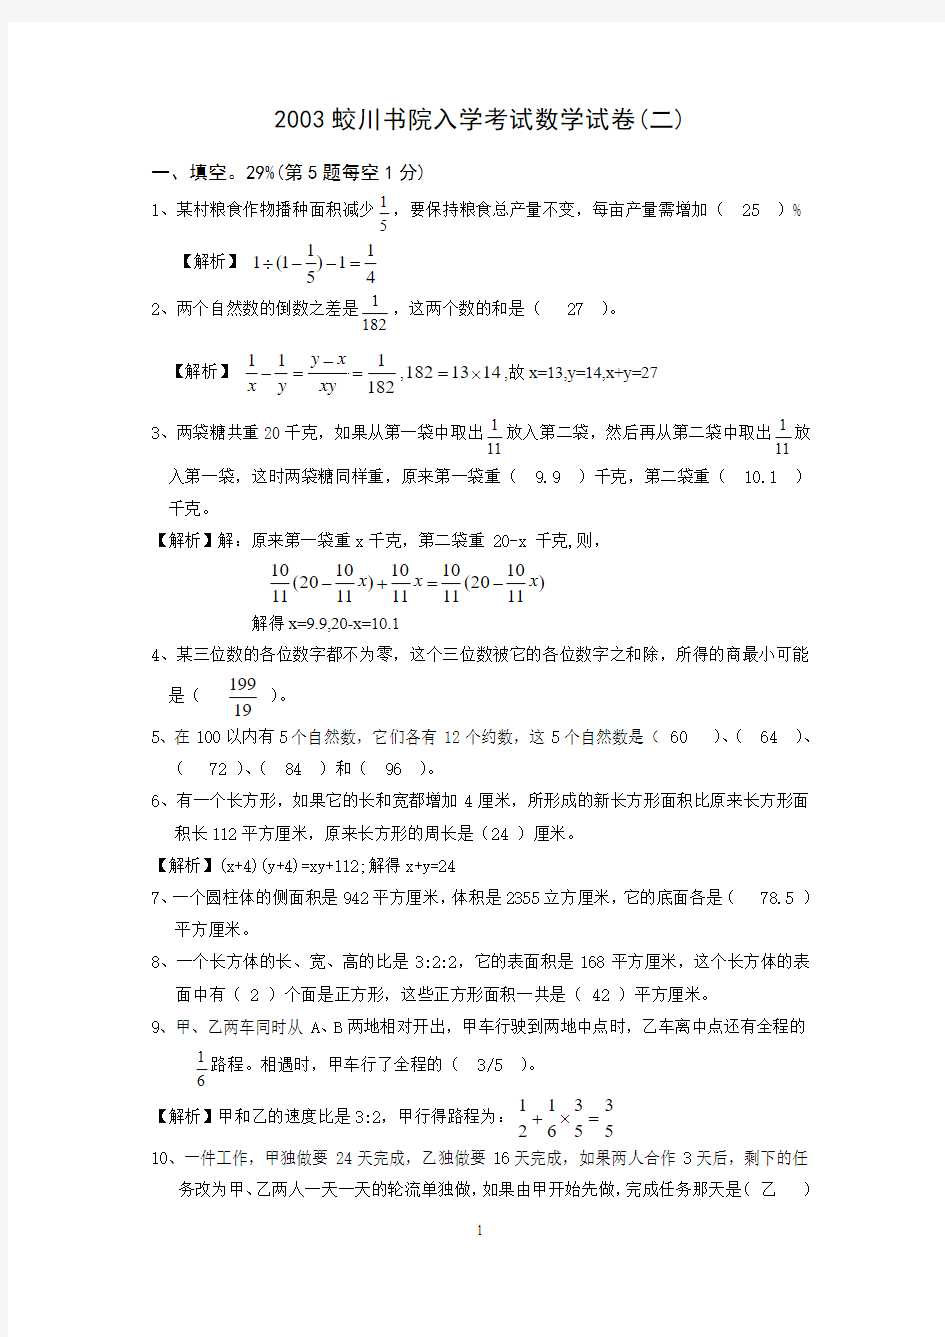 2003蛟川书院入学考试数学试卷(二)答案